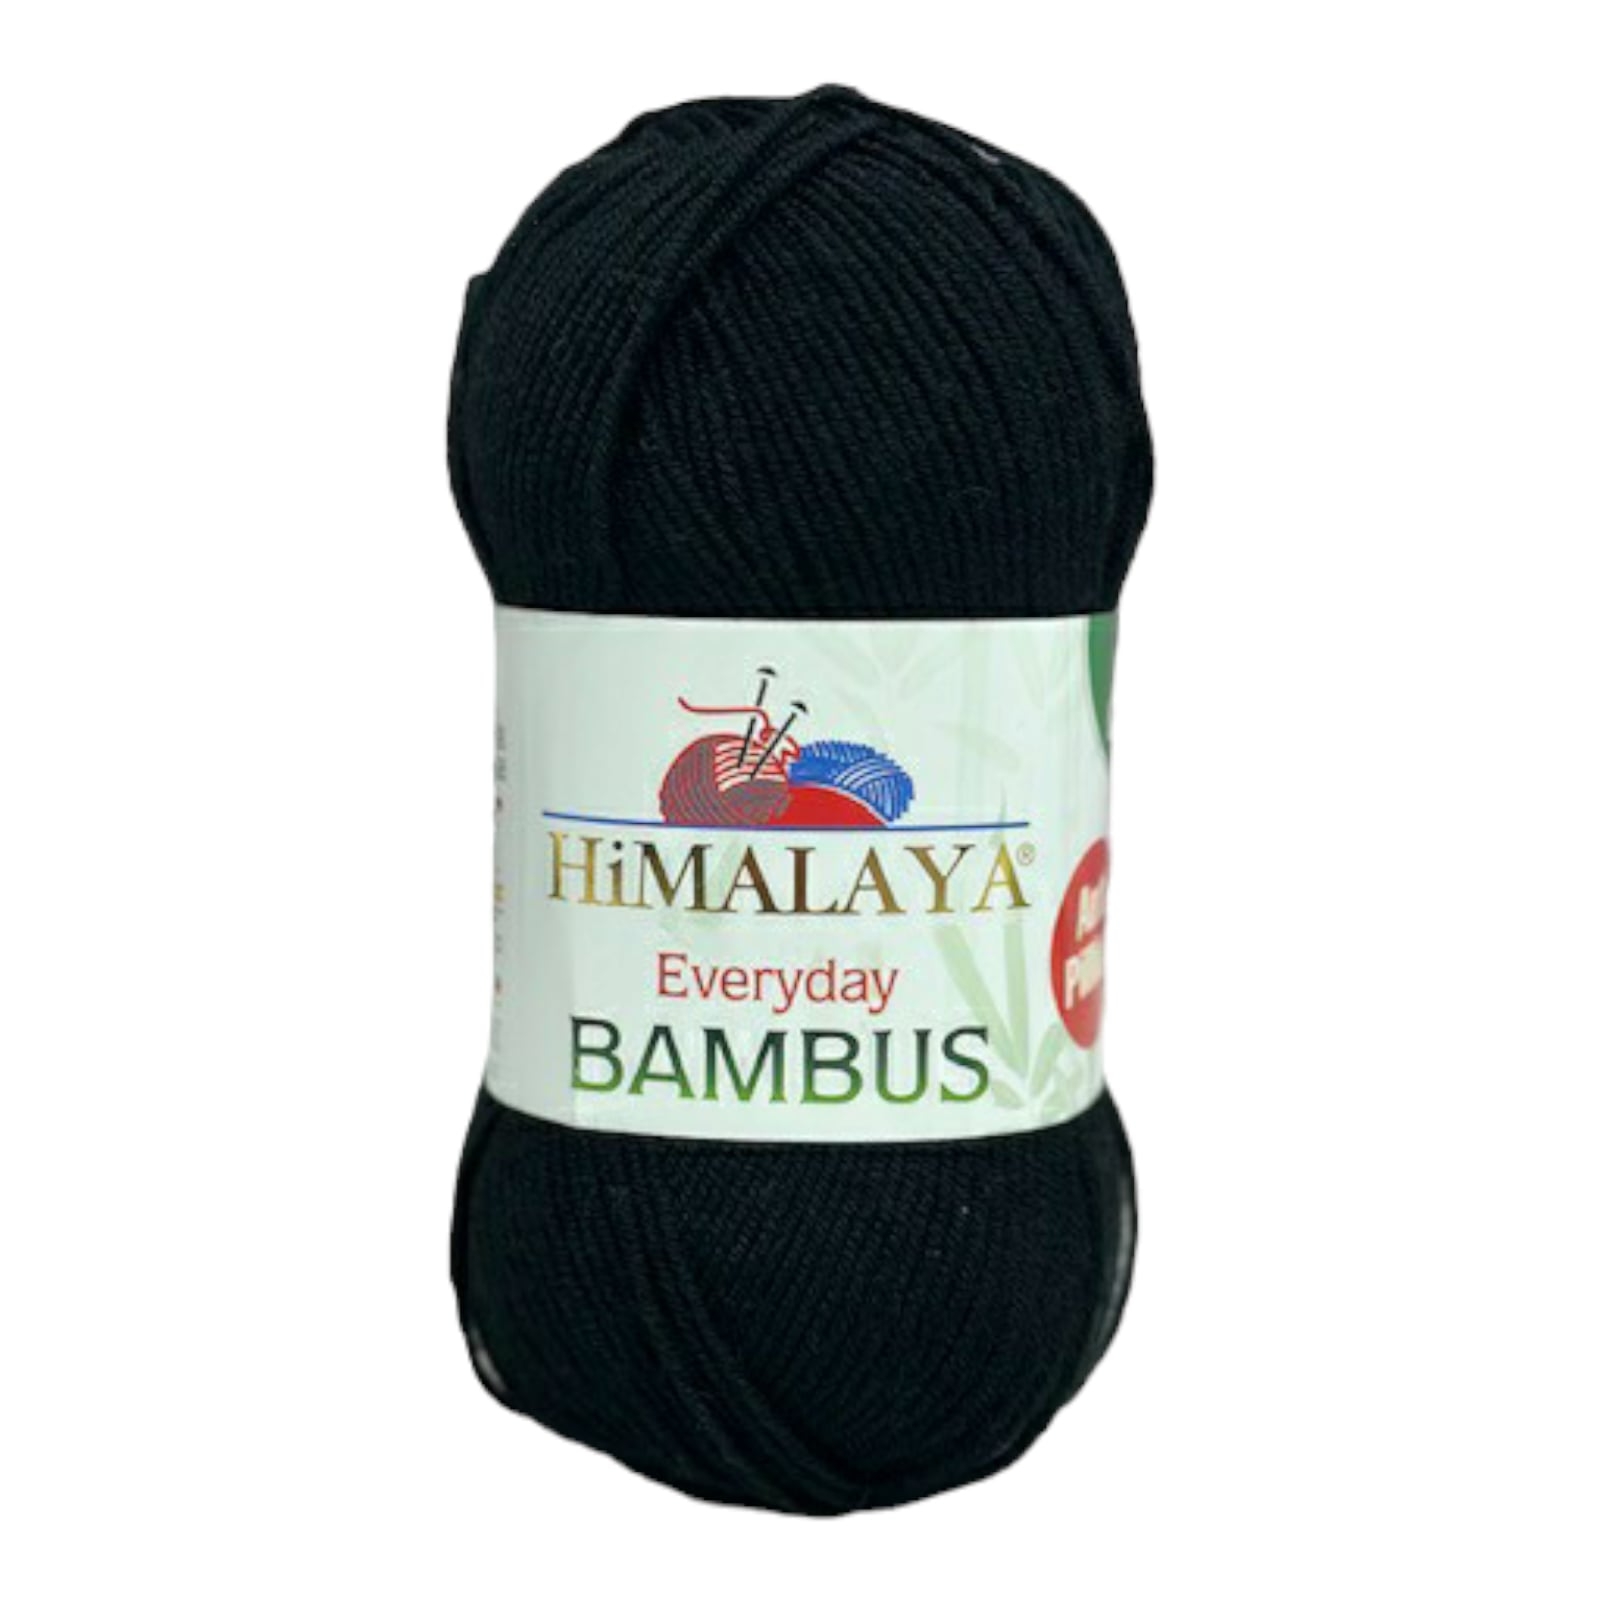 Himalaya Bambus 236-42